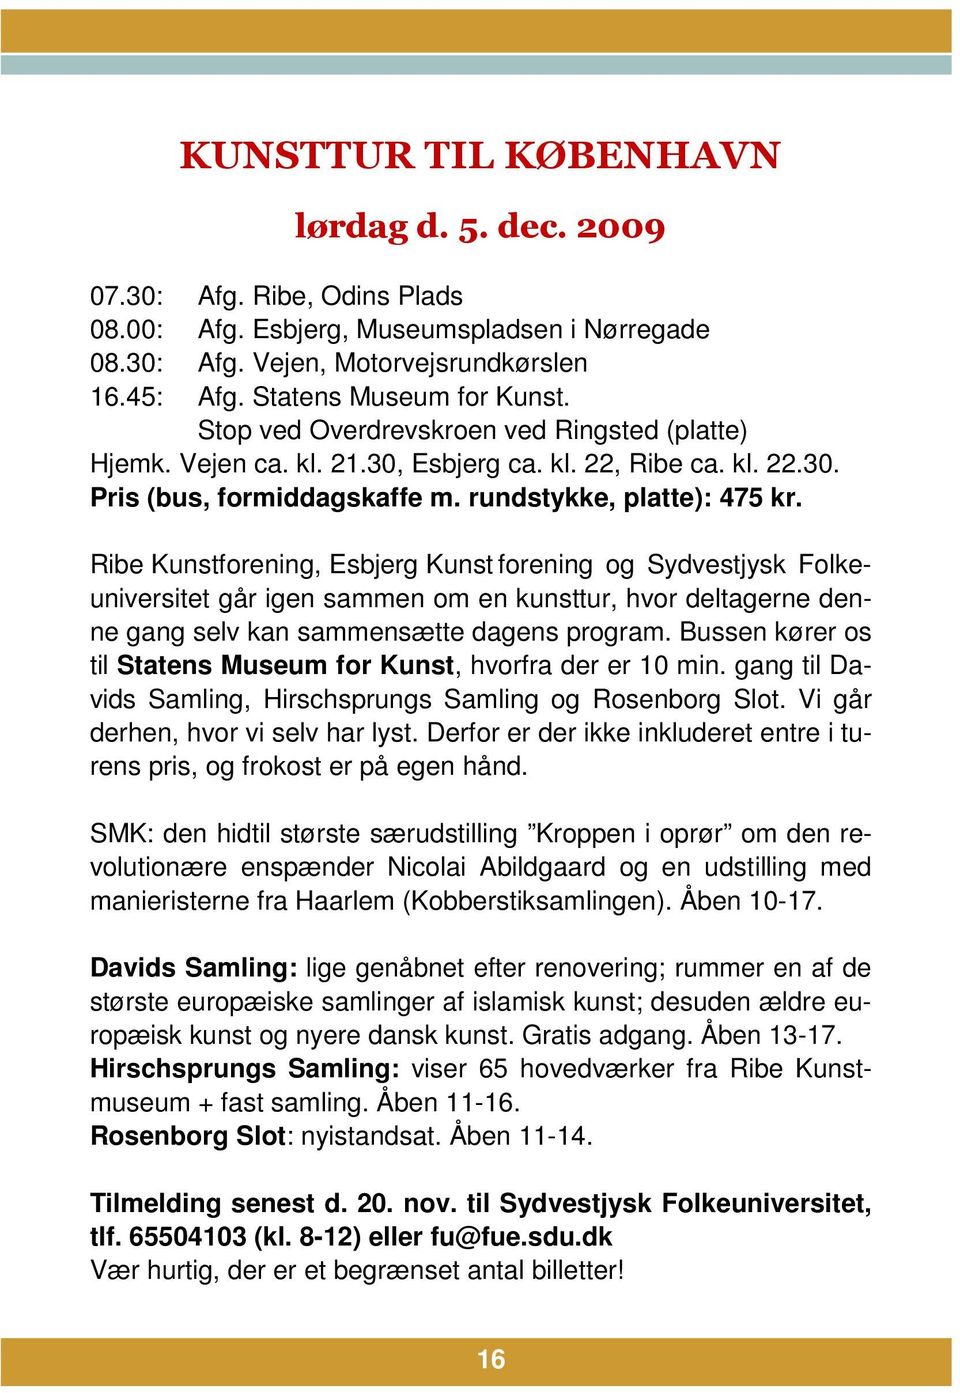 Ribe Kunstforening, Esbjerg Kunst forening og Sydvestjysk Folkeuniversitet går igen sammen om en kunsttur, hvor deltagerne denne gang selv kan sammensætte dagens program.